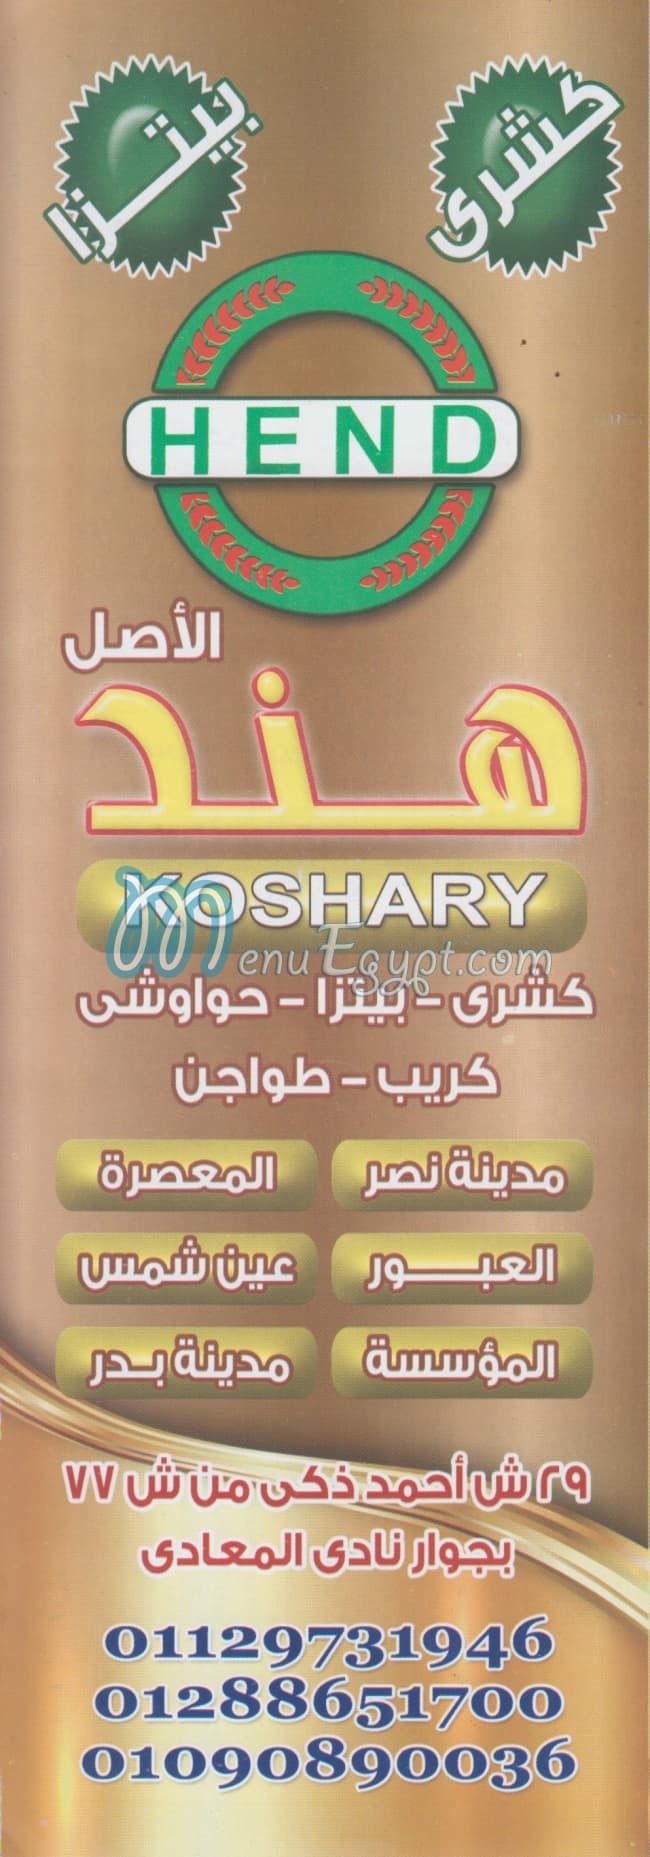 Koshary Hend El Maadi menu Egypt